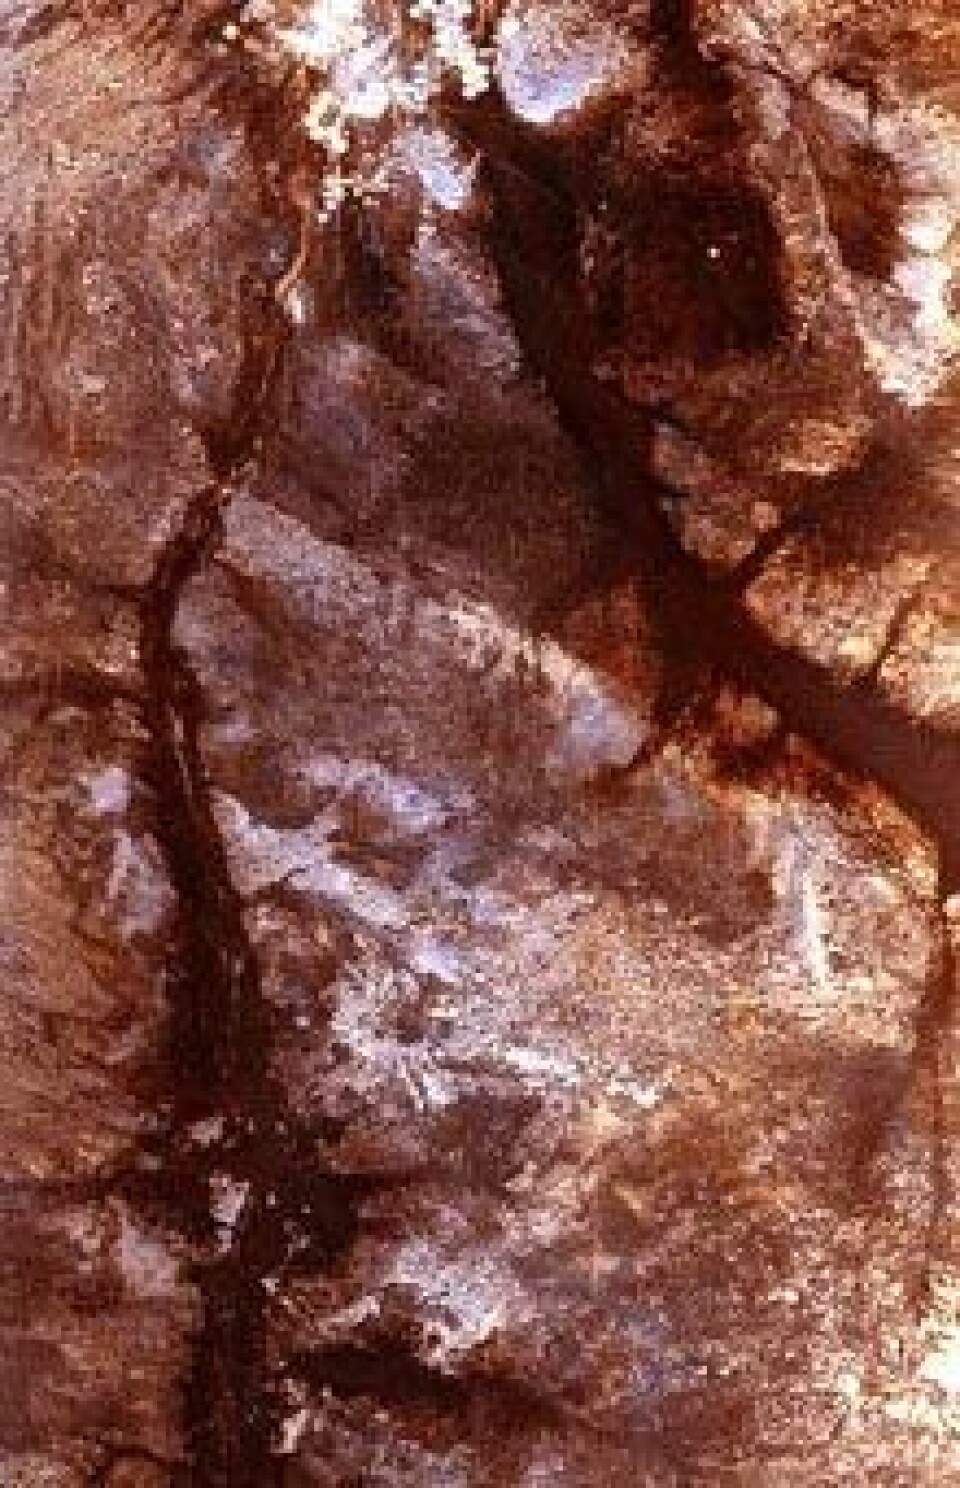 'Satellittbilde av kanalene i Sahara. (Copy: Anne Osborne, University of Bristol)'